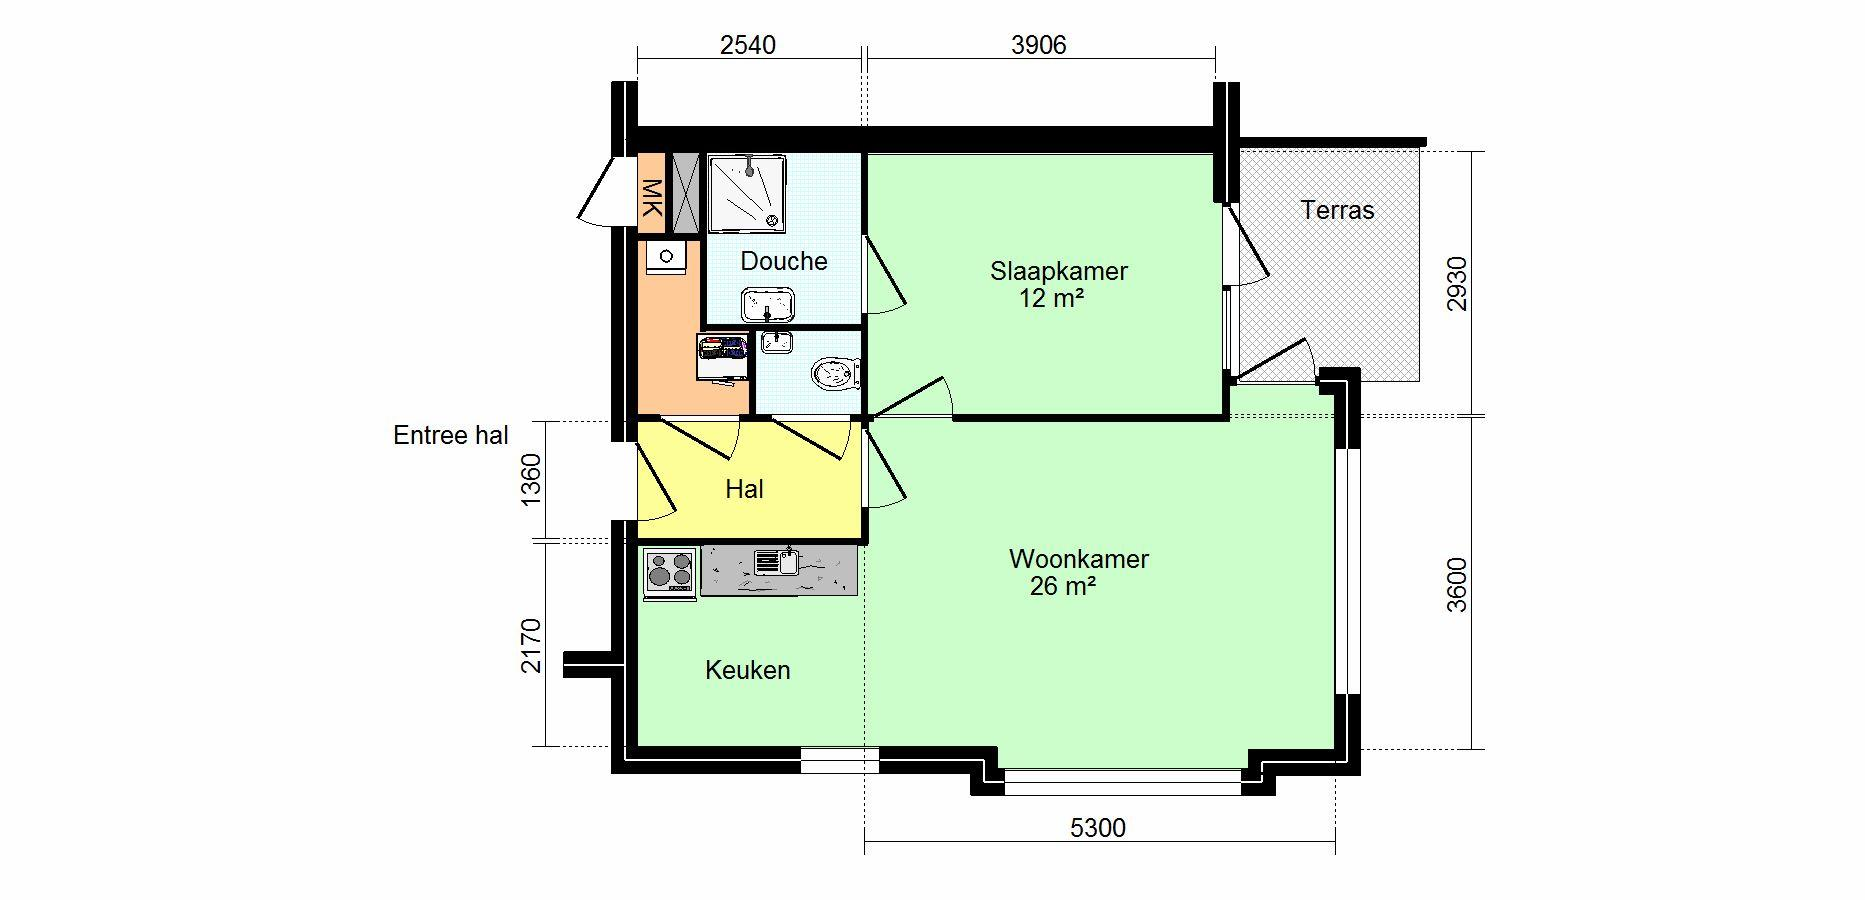 Type Aantal Ligging appartementen Huisnummers Huurprijs E3 1 Hoekappartement begane